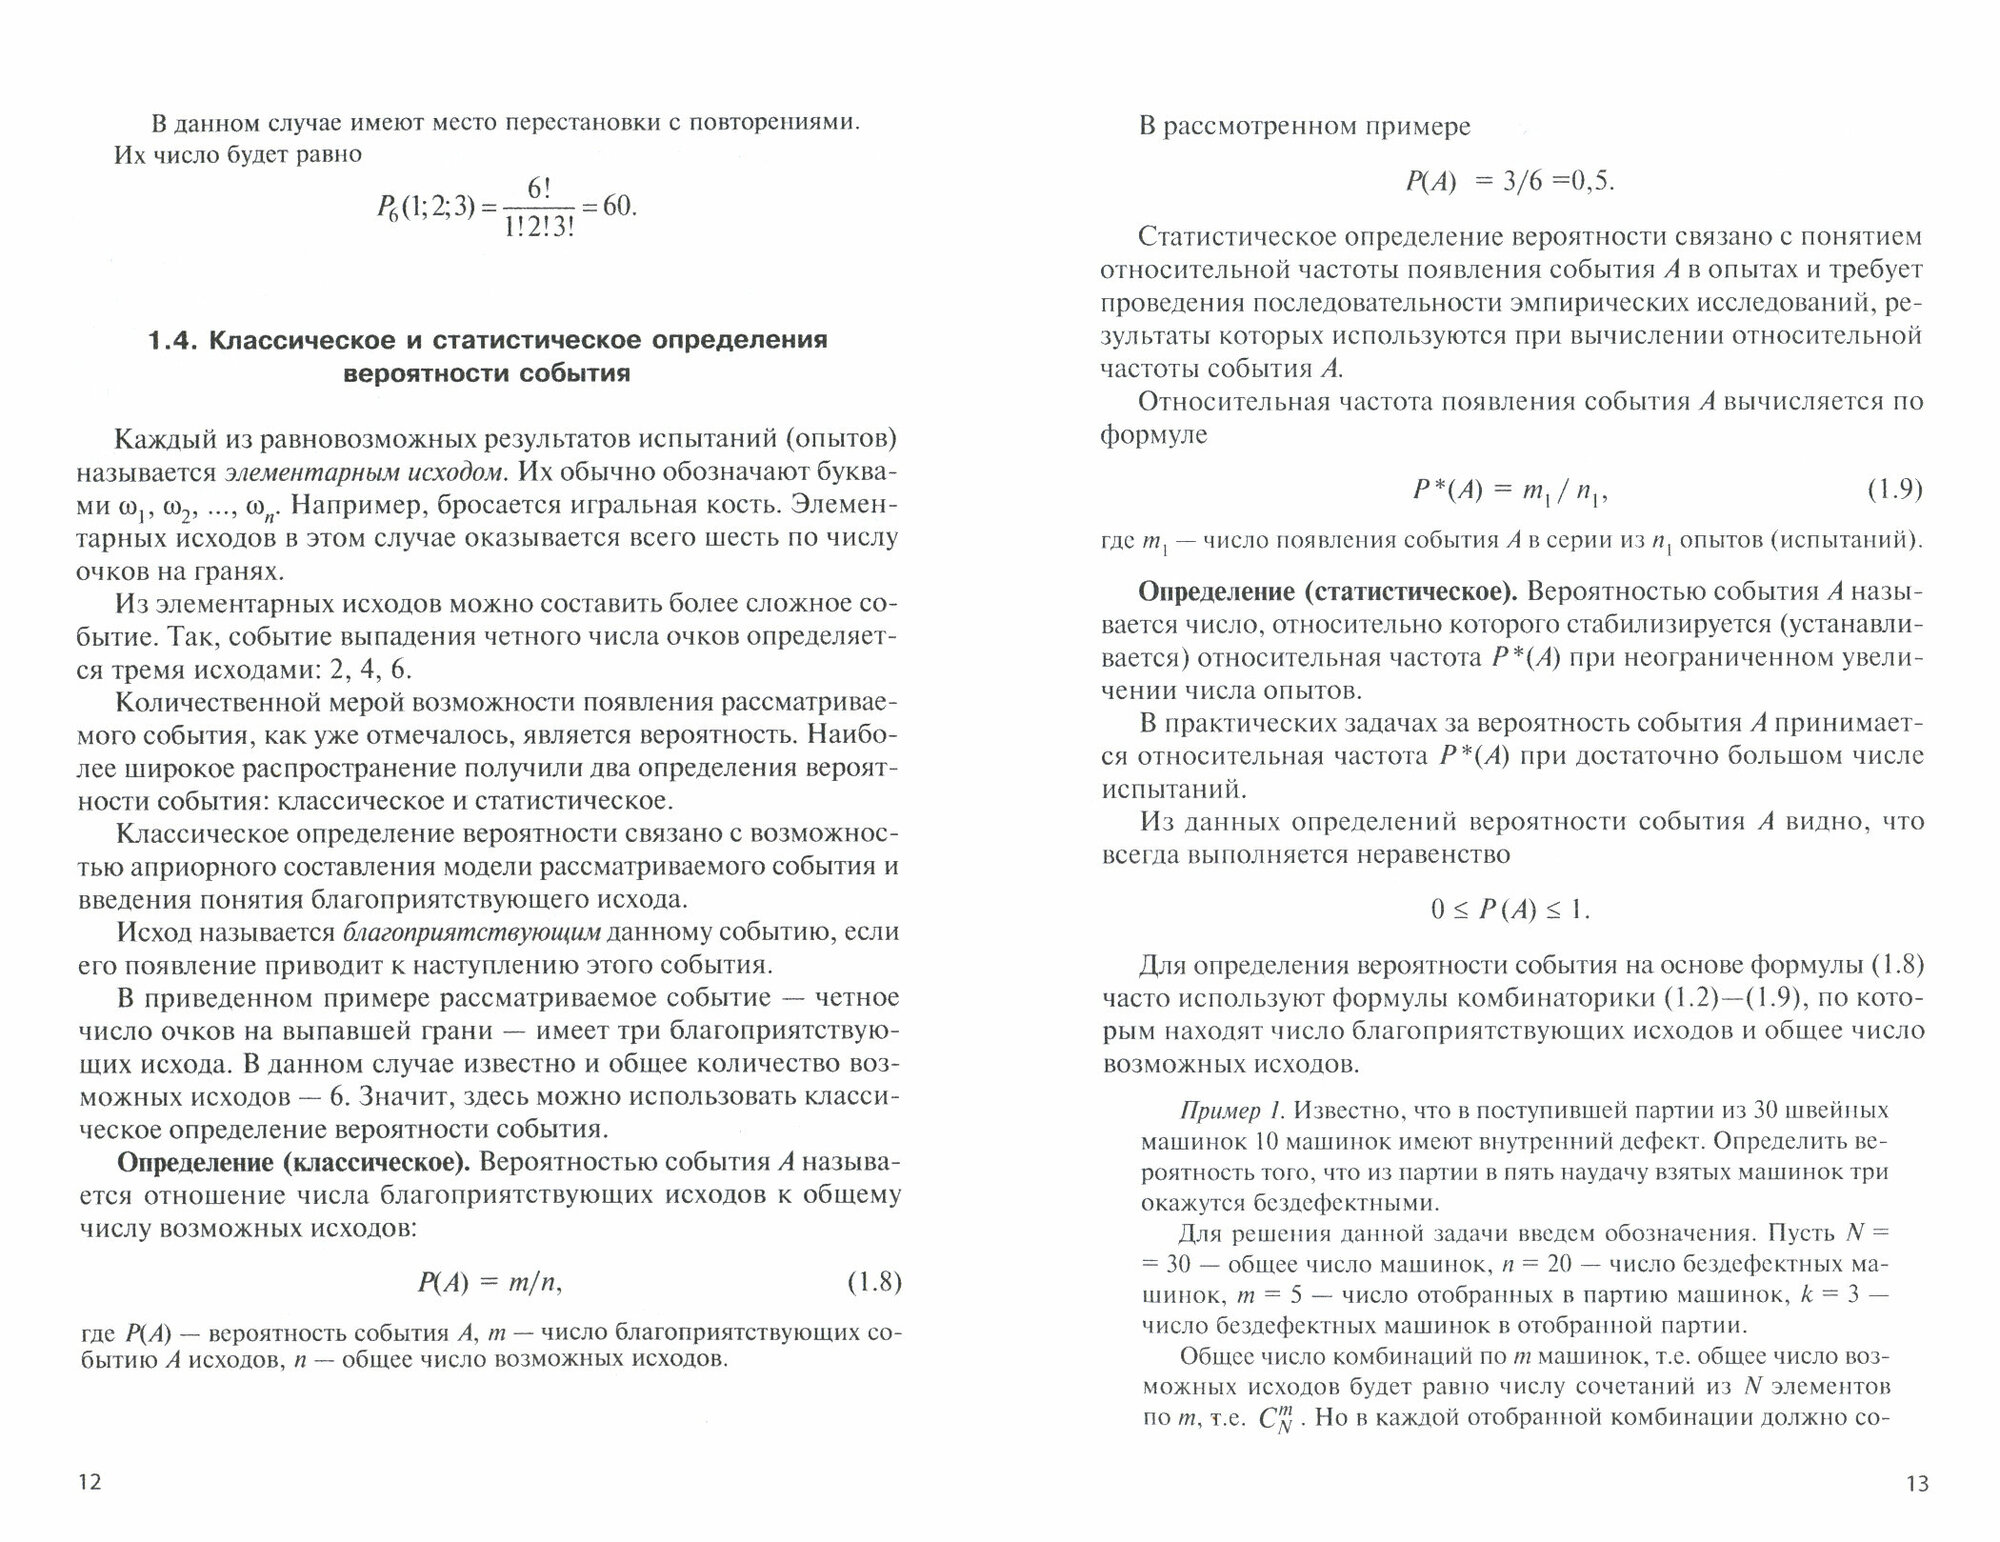 Теория вероятностей и математическая статистика. Учебное пособие - фото №3